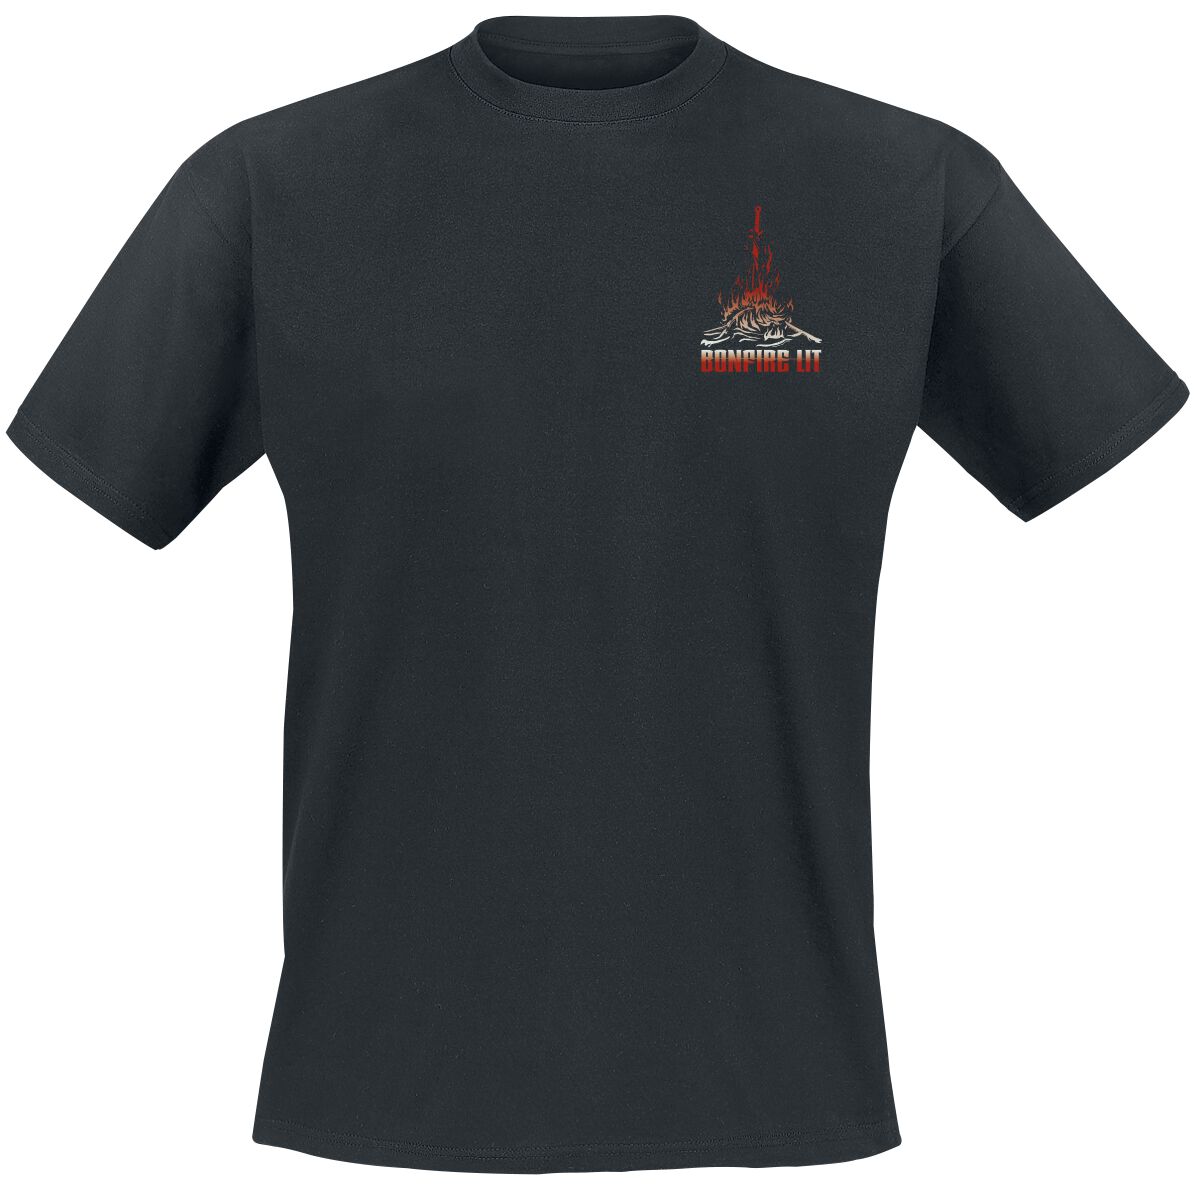 Dark Souls - Gaming T-Shirt - Bonfire Lit - S bis XXL - für Männer - Größe XL - schwarz  - EMP exklusives Merchandise!